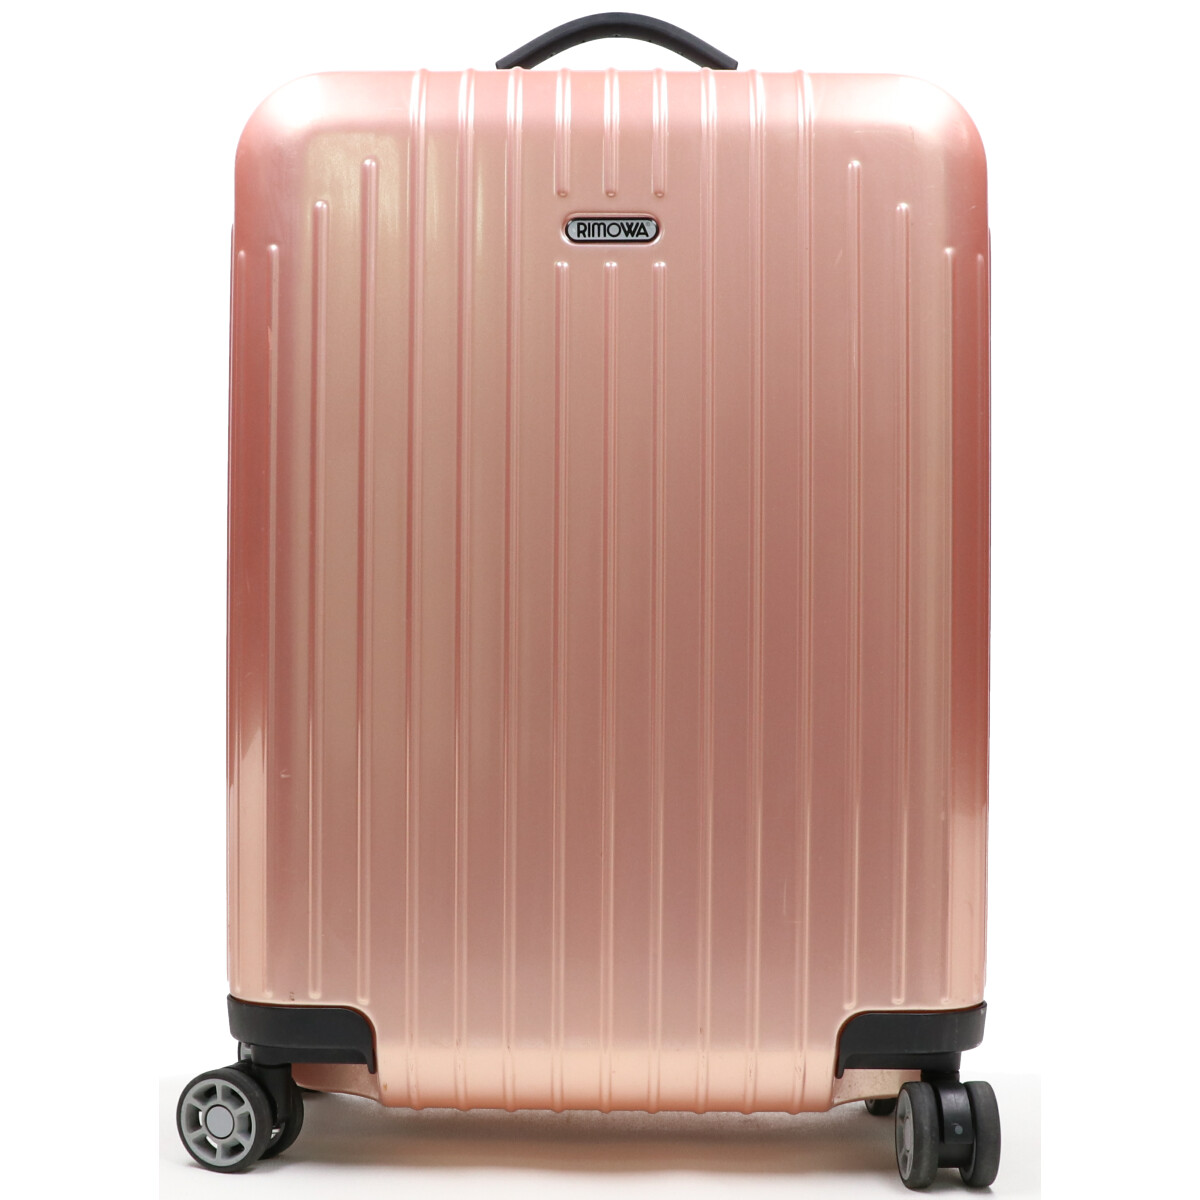 リモワの828.52 SALSA AIR サルサエアー 4輪スーツケースの買取実績です。